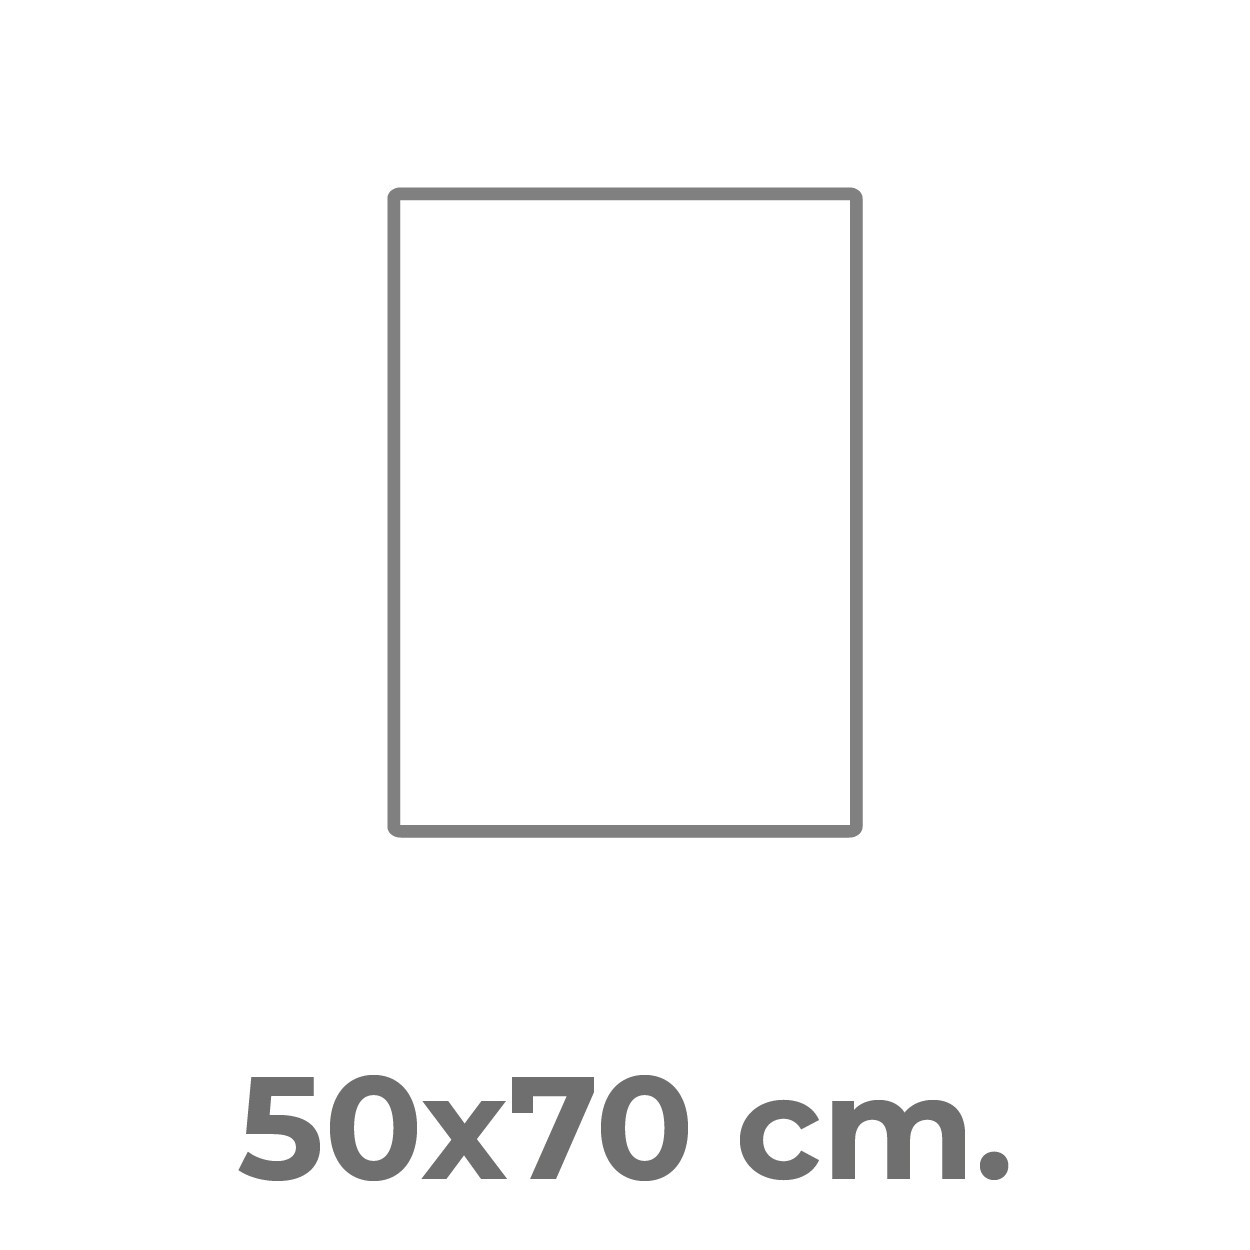 50x70cm